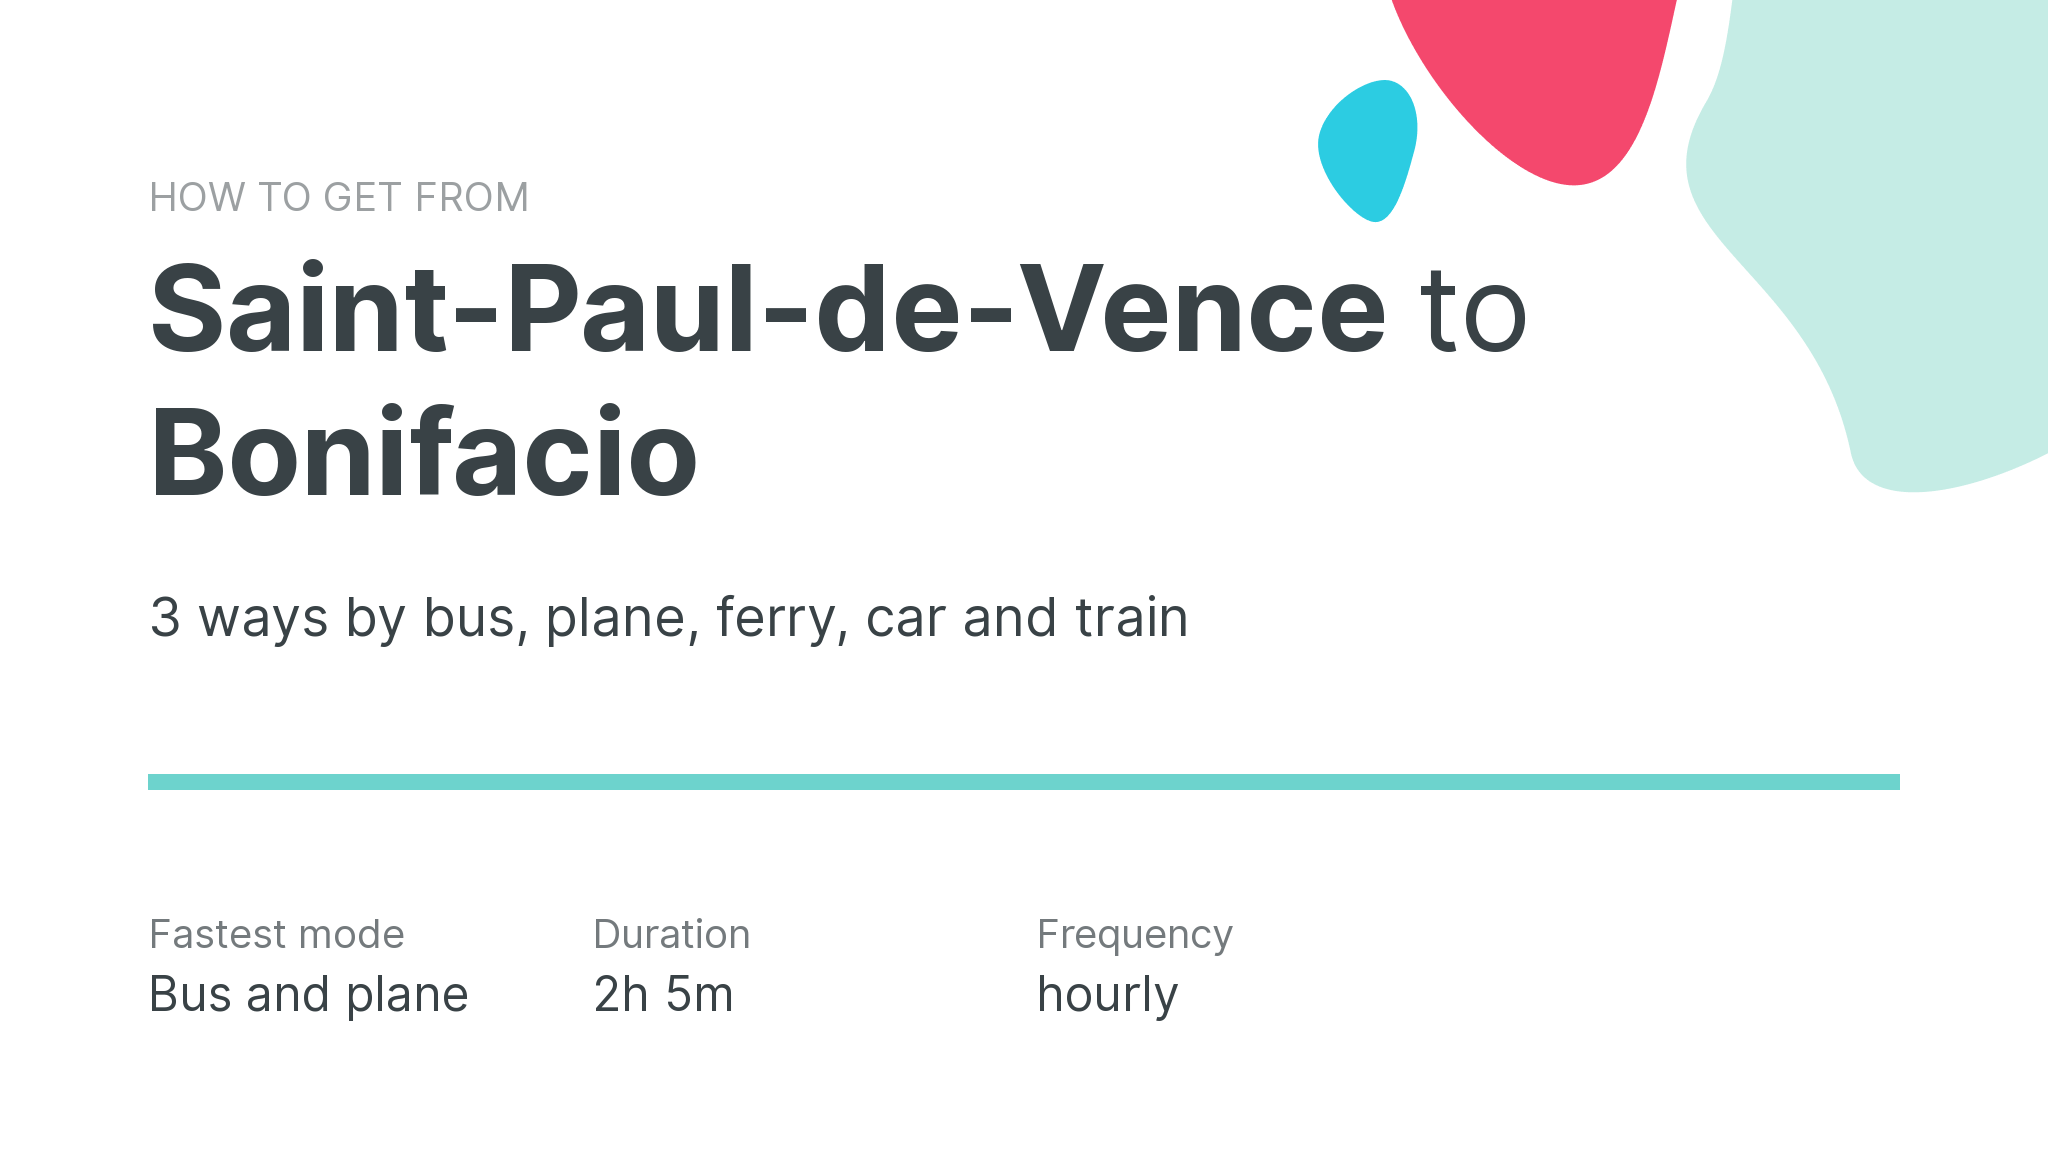 How do I get from Saint-Paul-de-Vence to Bonifacio